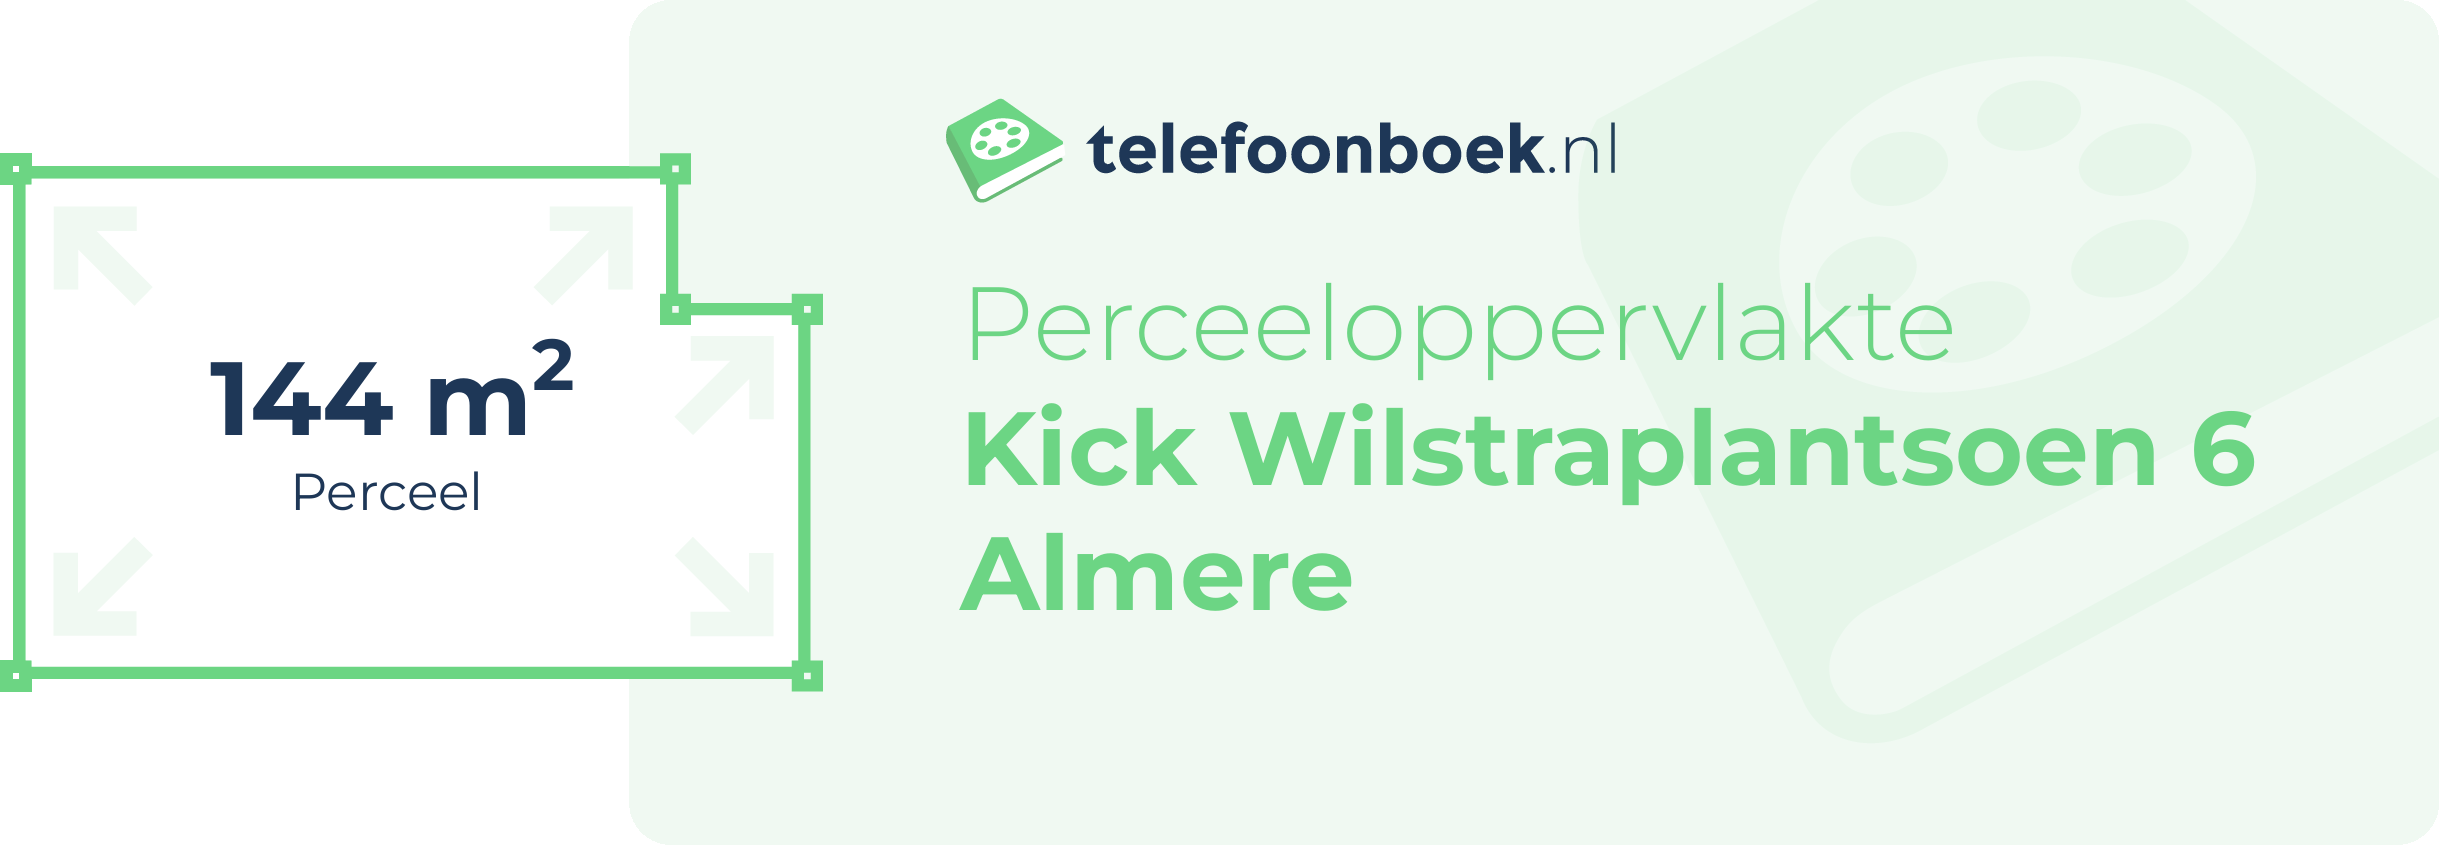 Perceeloppervlakte Kick Wilstraplantsoen 6 Almere